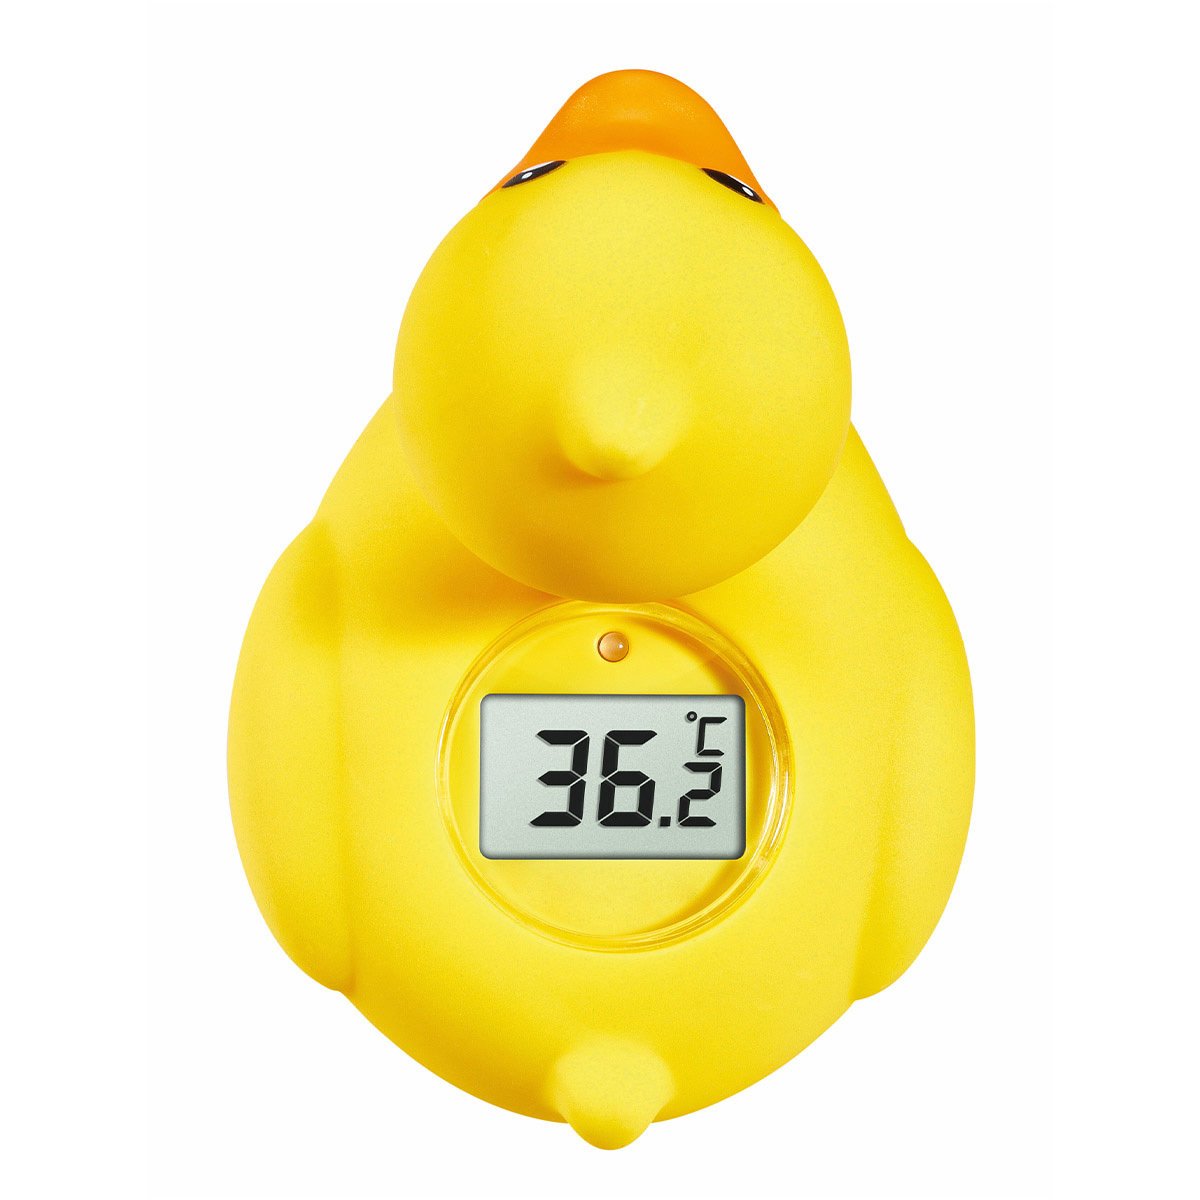 Dijital ''DUCKY'' Banyo Termometre, Bebek Duş Termometresi, Ördek Sıcaklık Ölçer TFA Dostmann 30.2031.07 TM832.1061.07